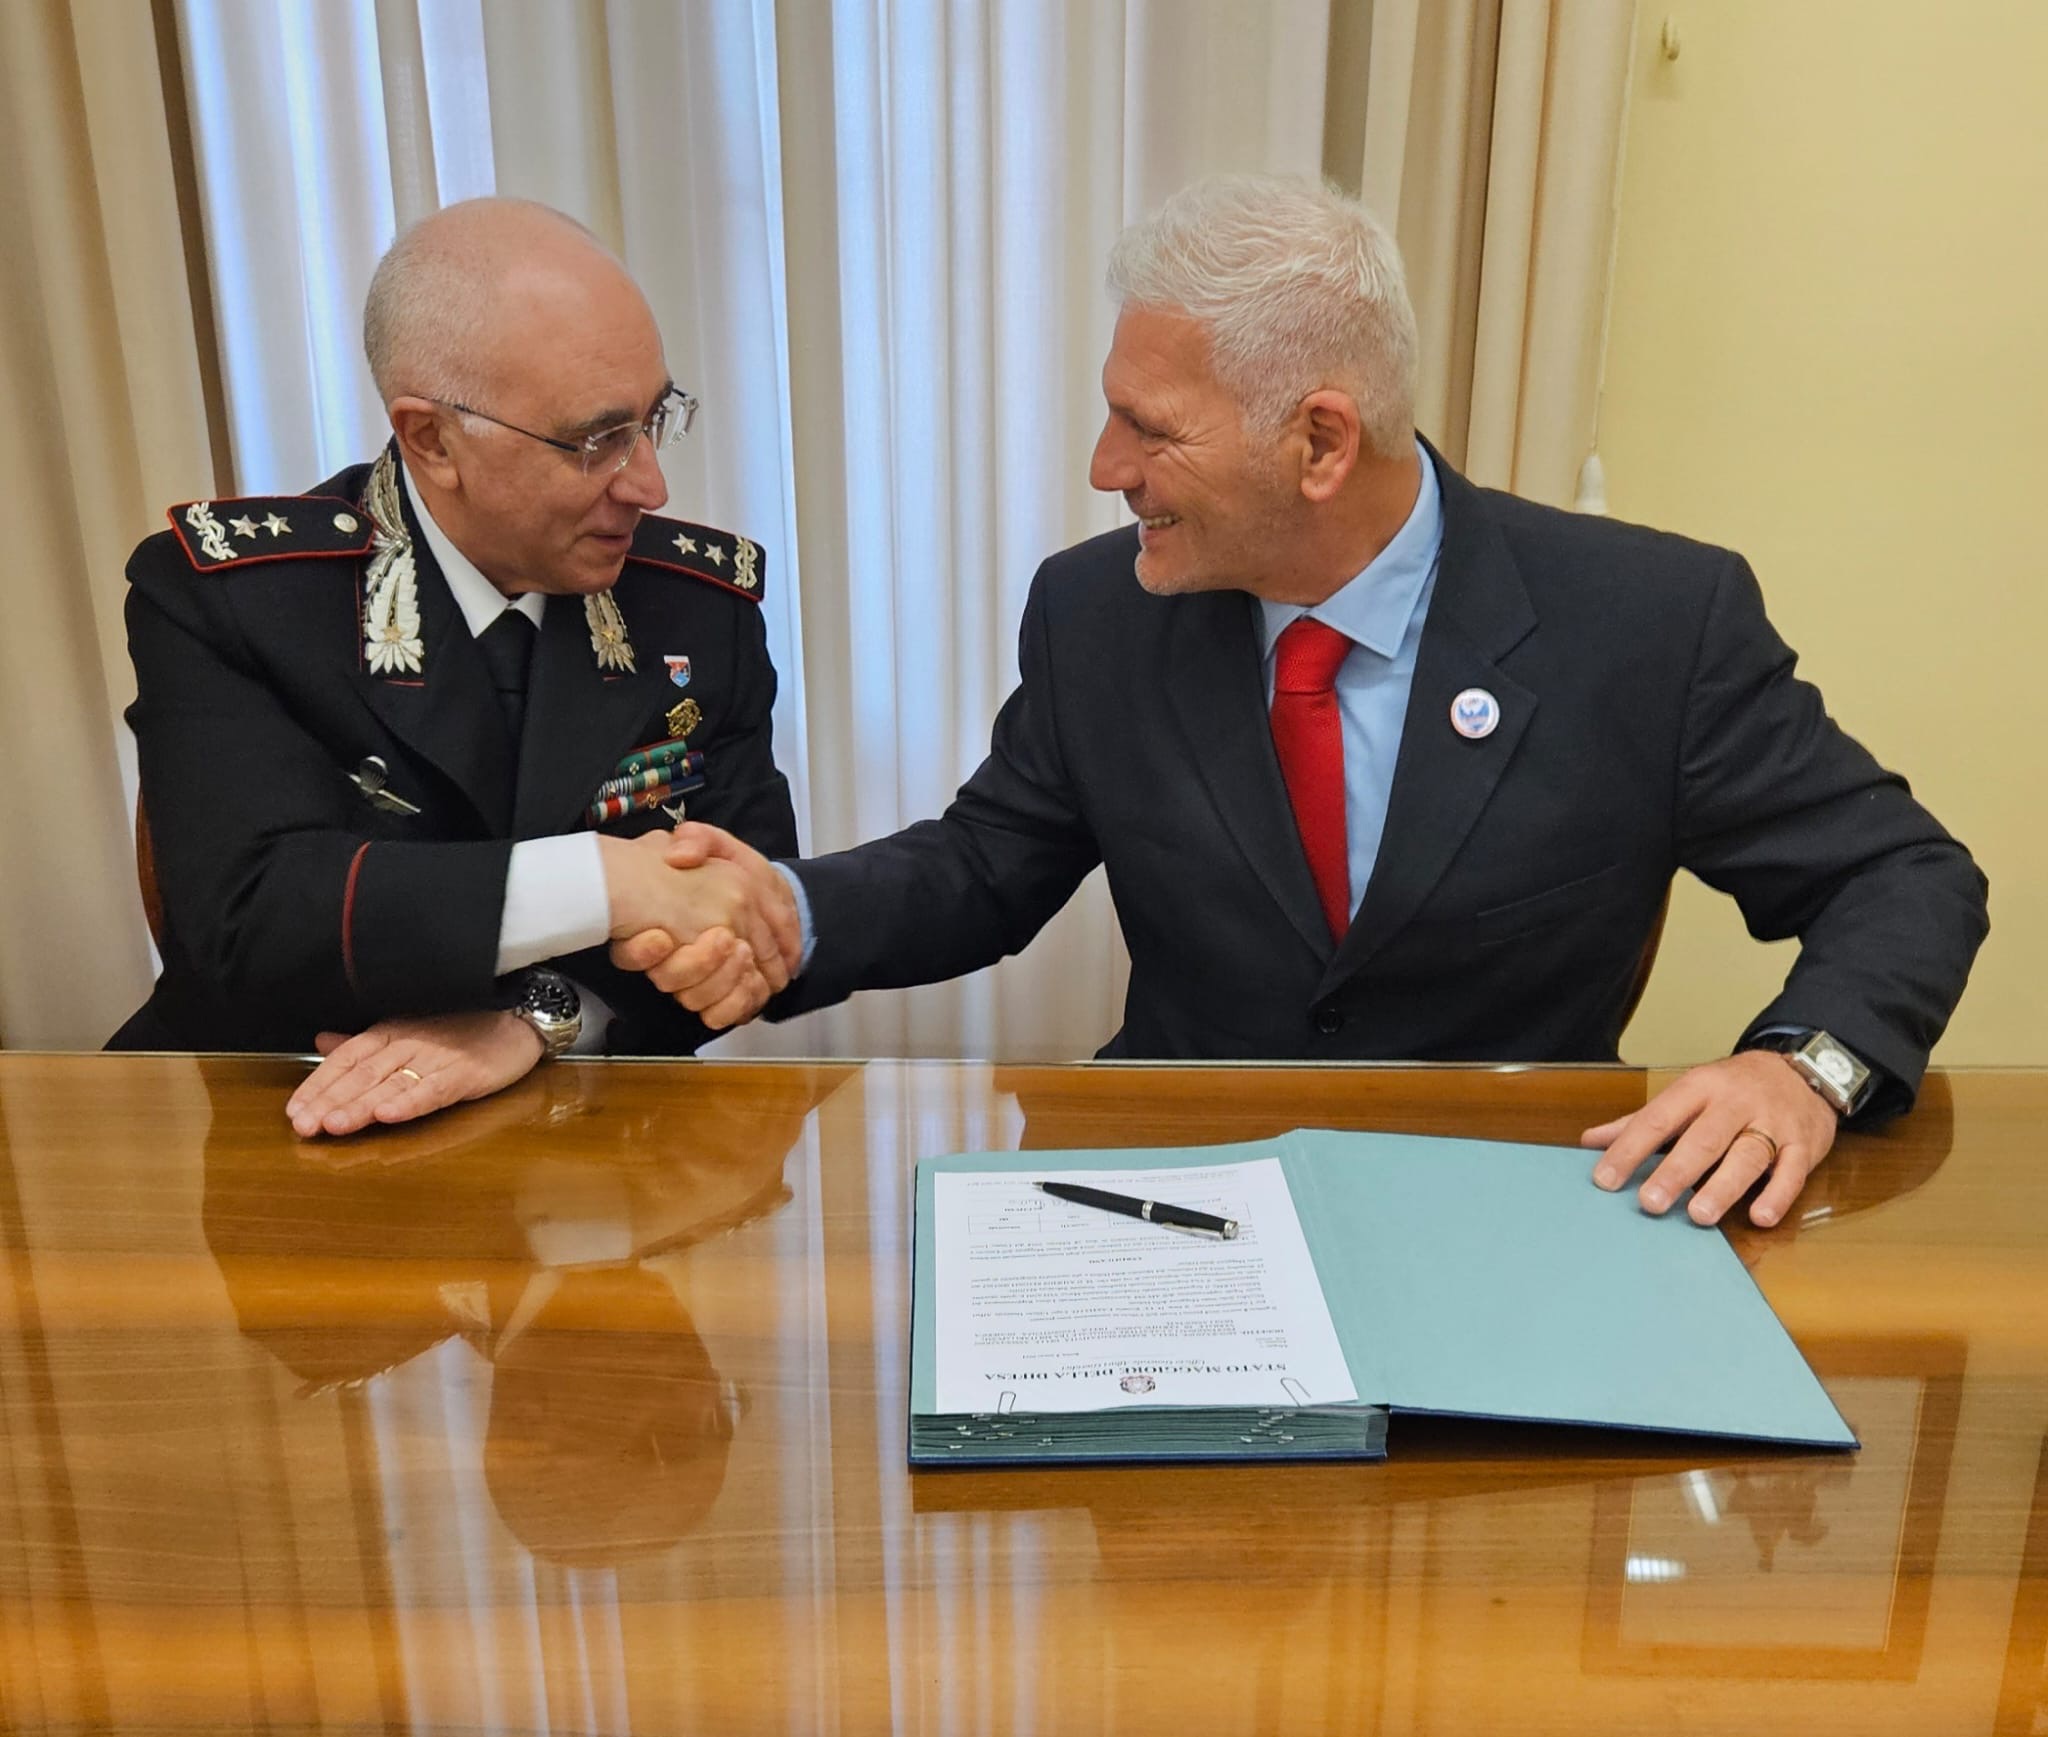 Libera Rappresentanza dei Militari convocata a Palazzo Esercito, certificata firma attestante validità numerica per rappresentatività nazionale
